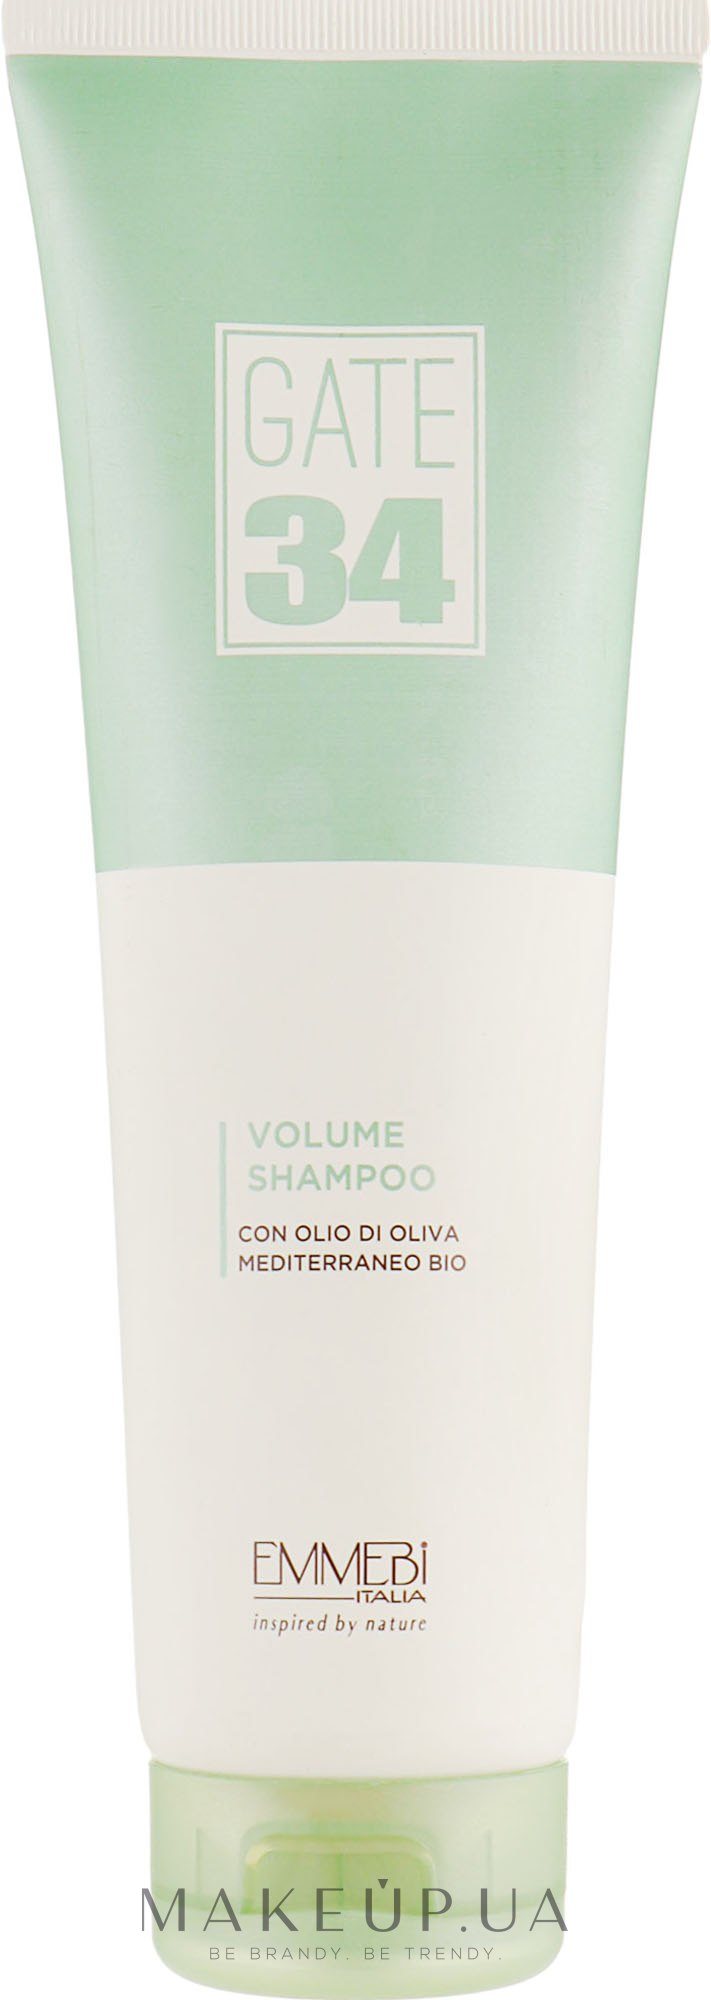 Шампунь для объема с органическим маслом оливы - Emmebi Italia Gate 34 Oliva Bio Volume Shampoo  — фото 250ml